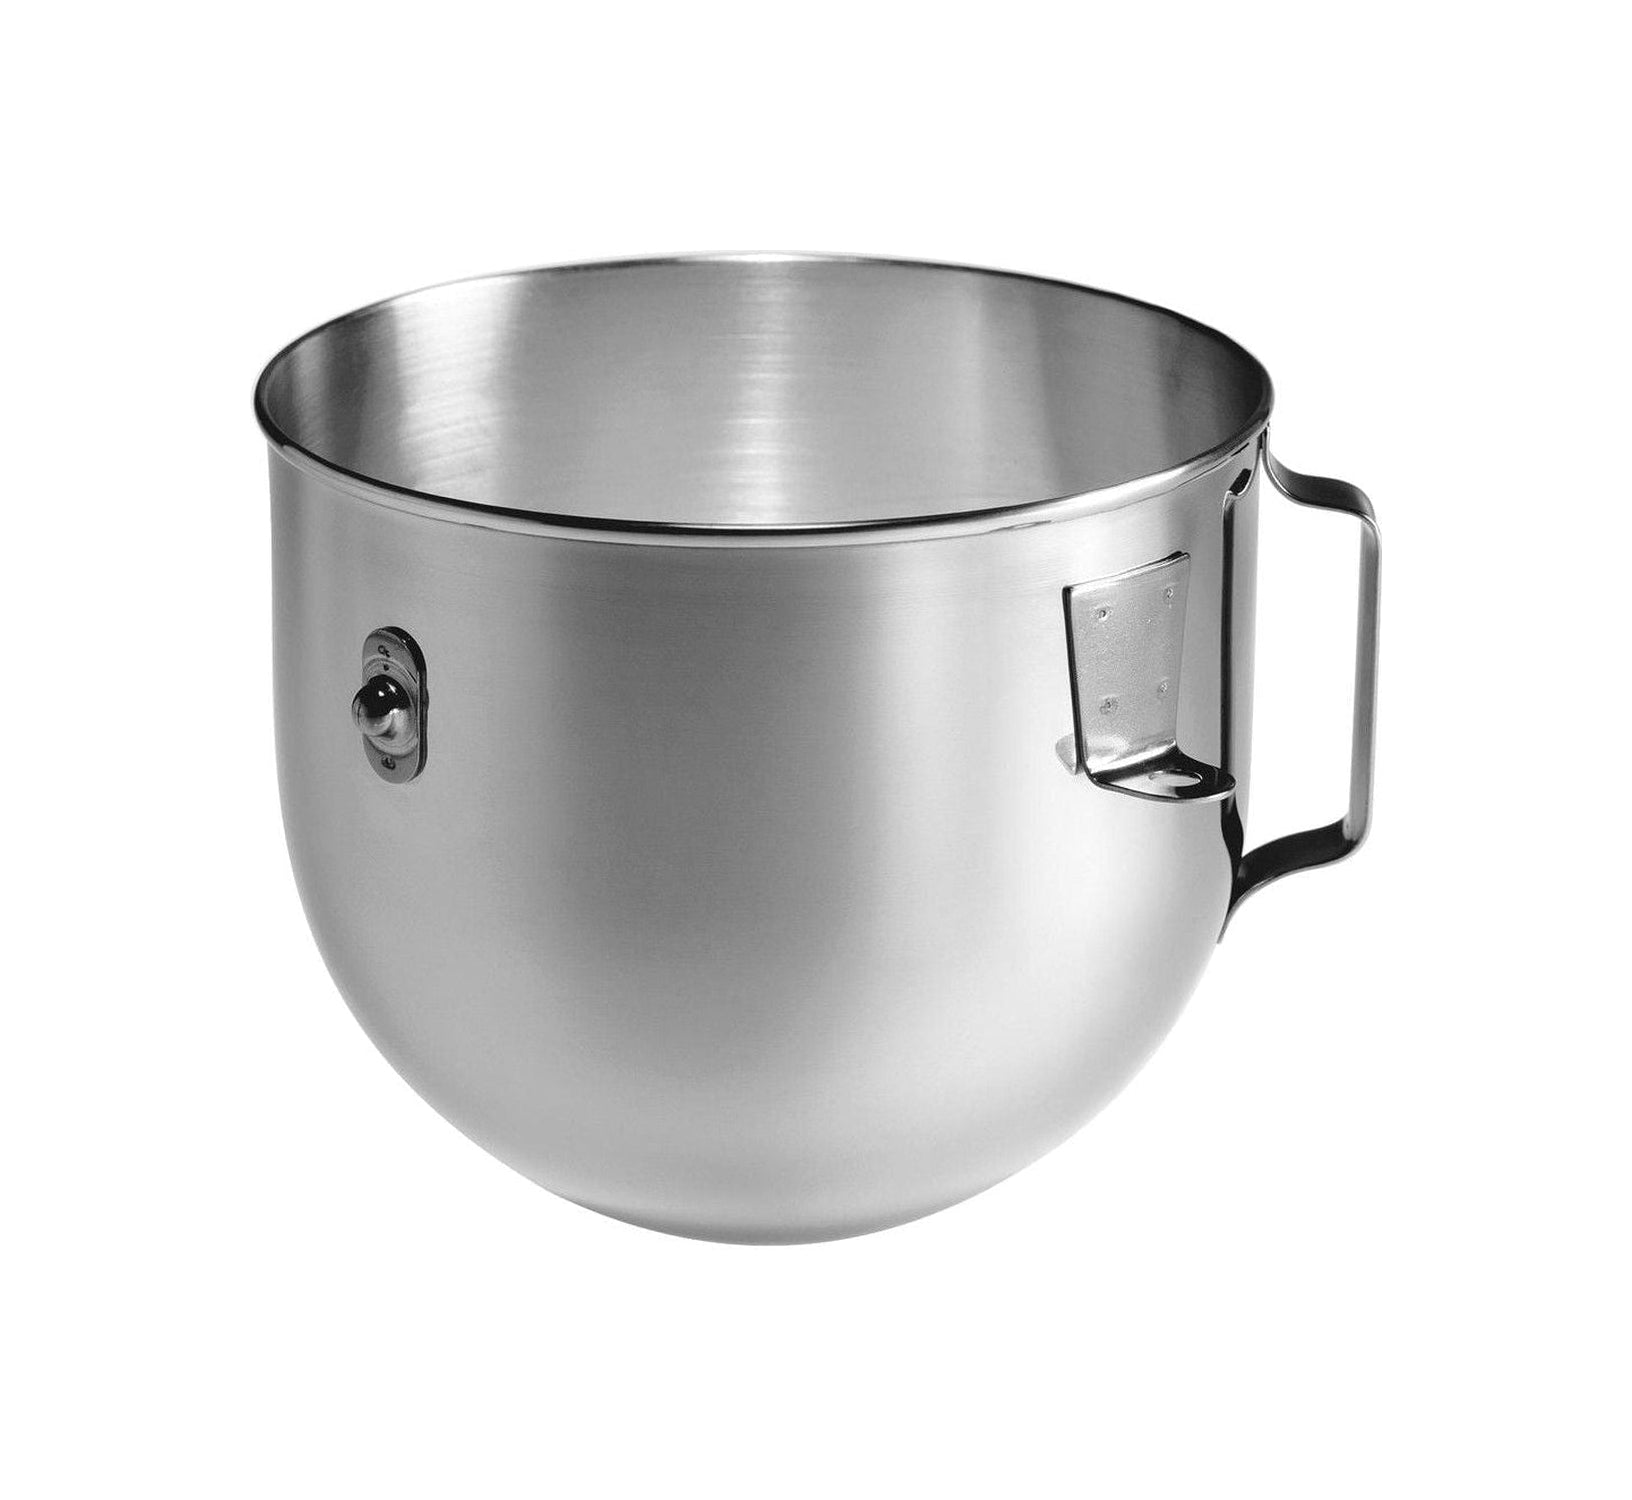 Kökhjälp 5 K5 A2 SB Mixing Bowl för 4,8 L Tungt, rostfritt stål